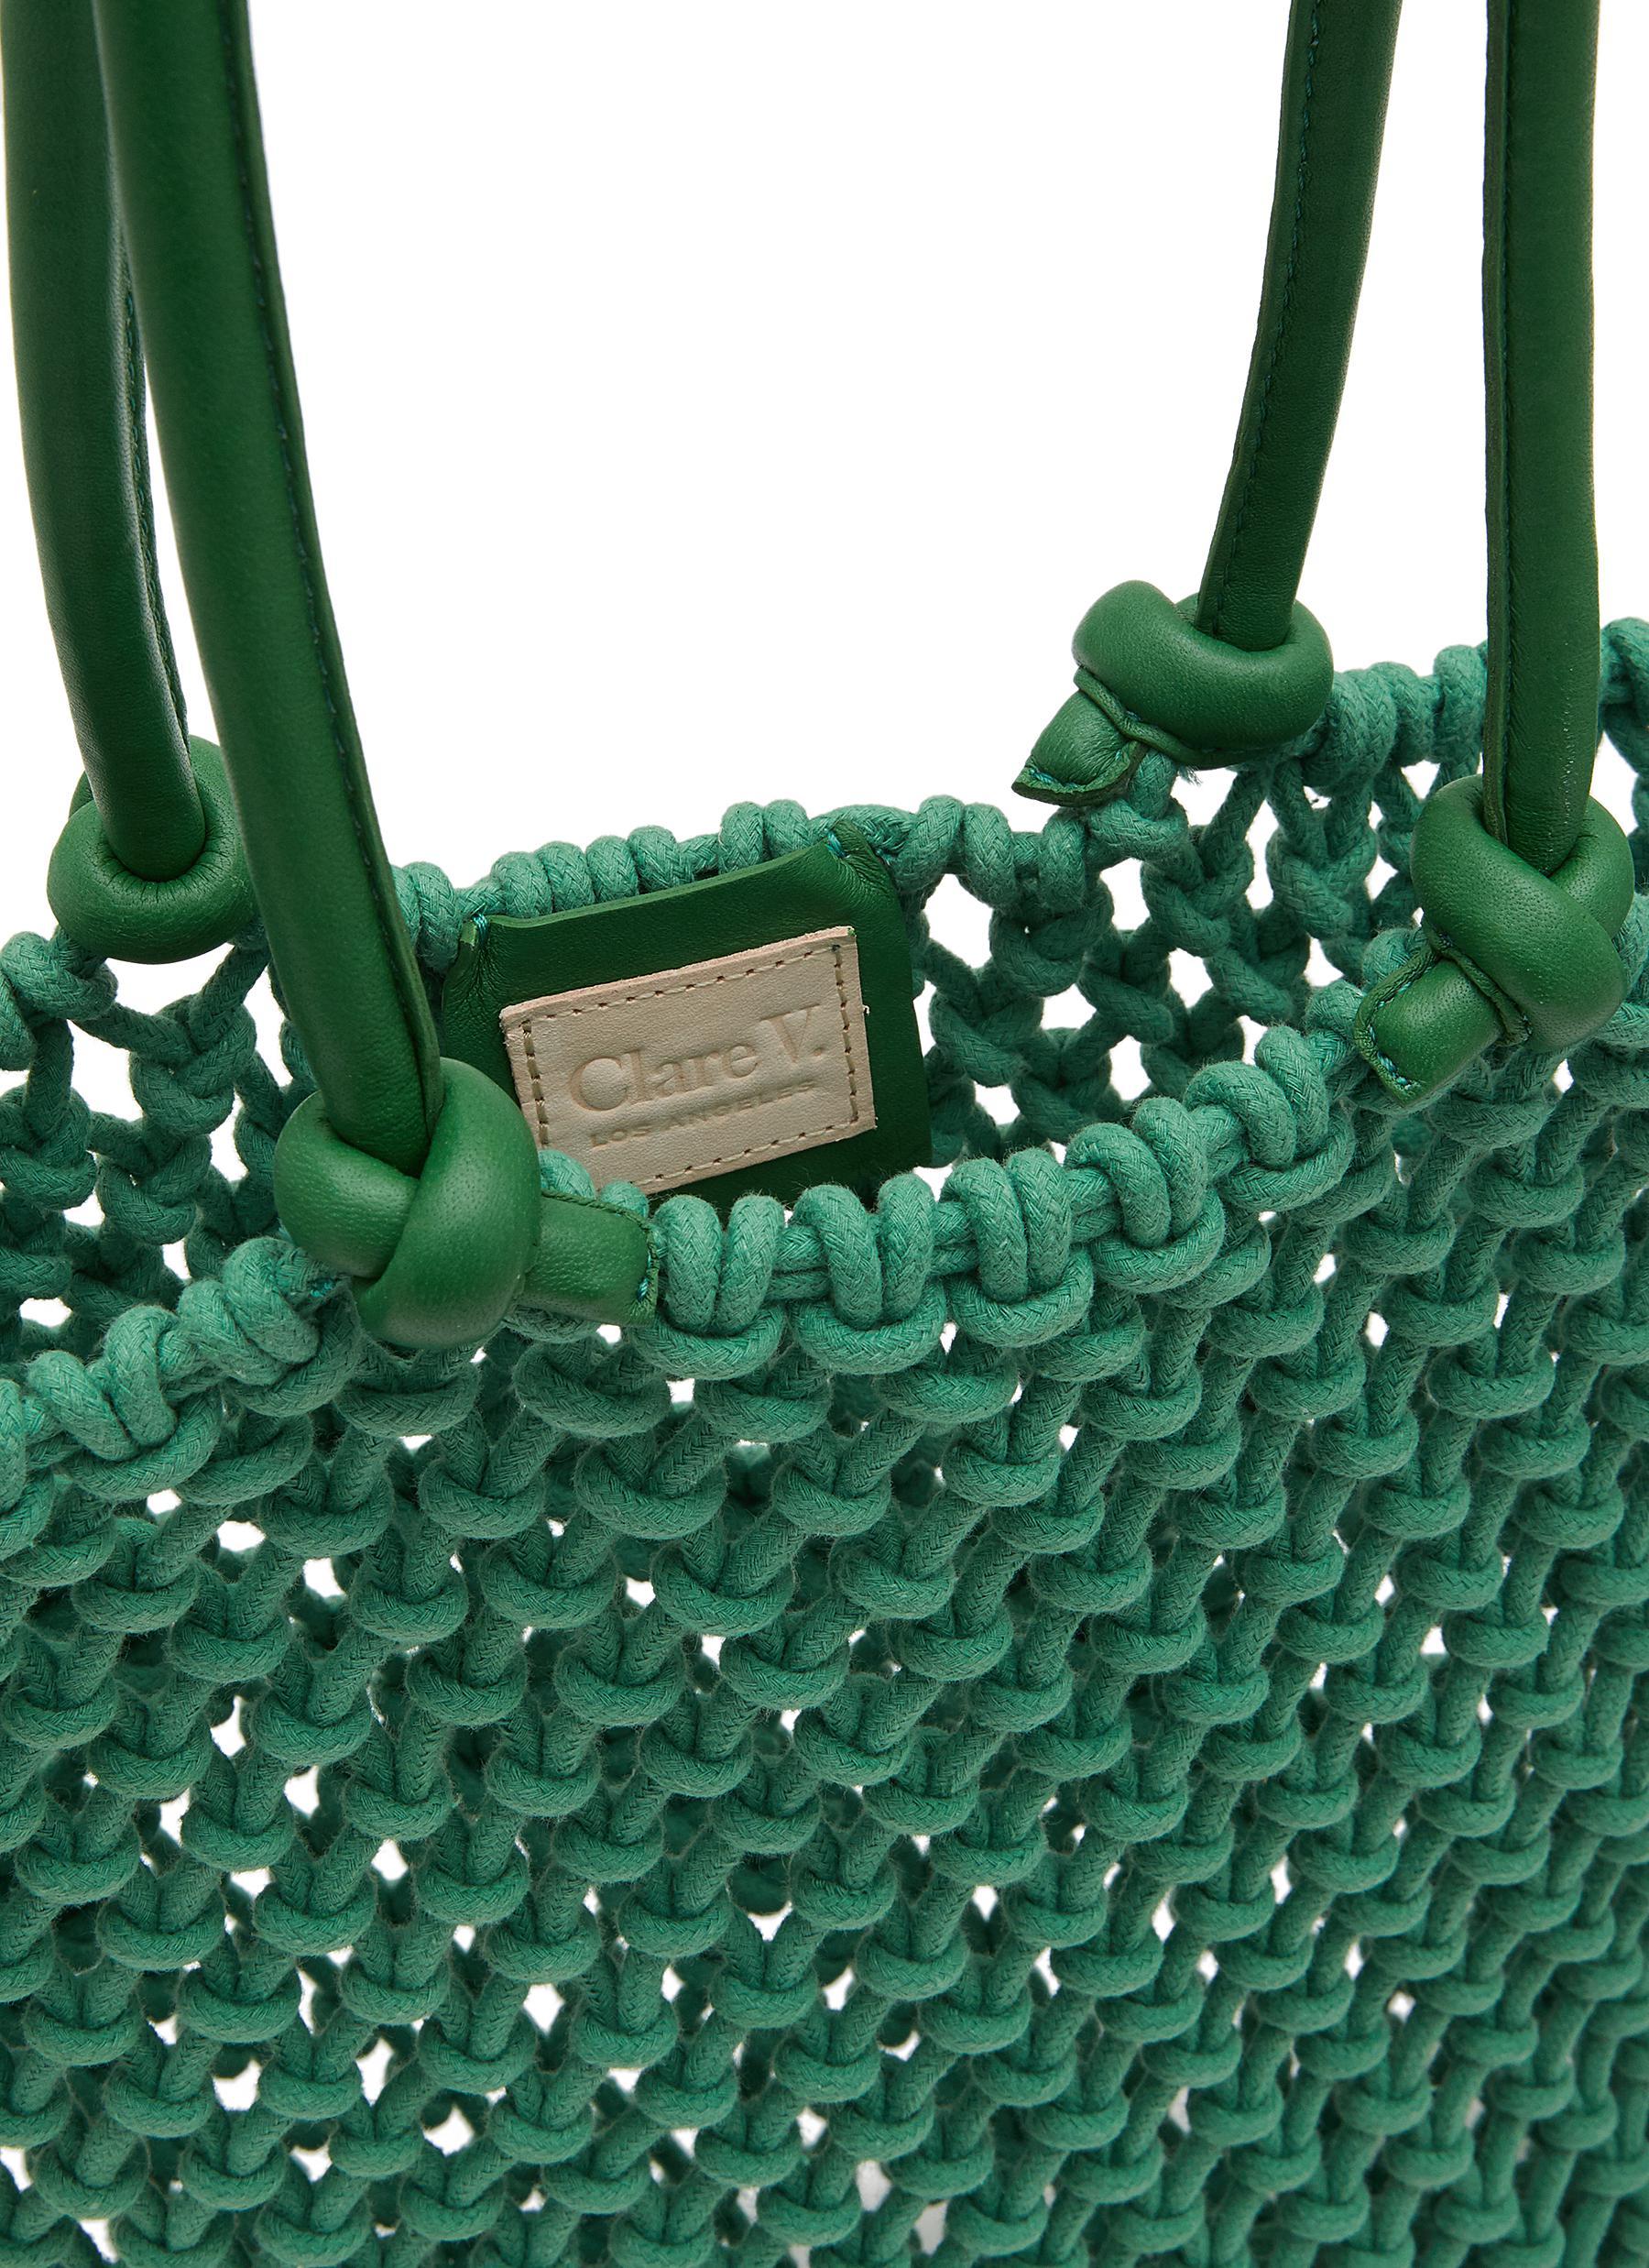 Clare V. Sandy Tote Bag in Green